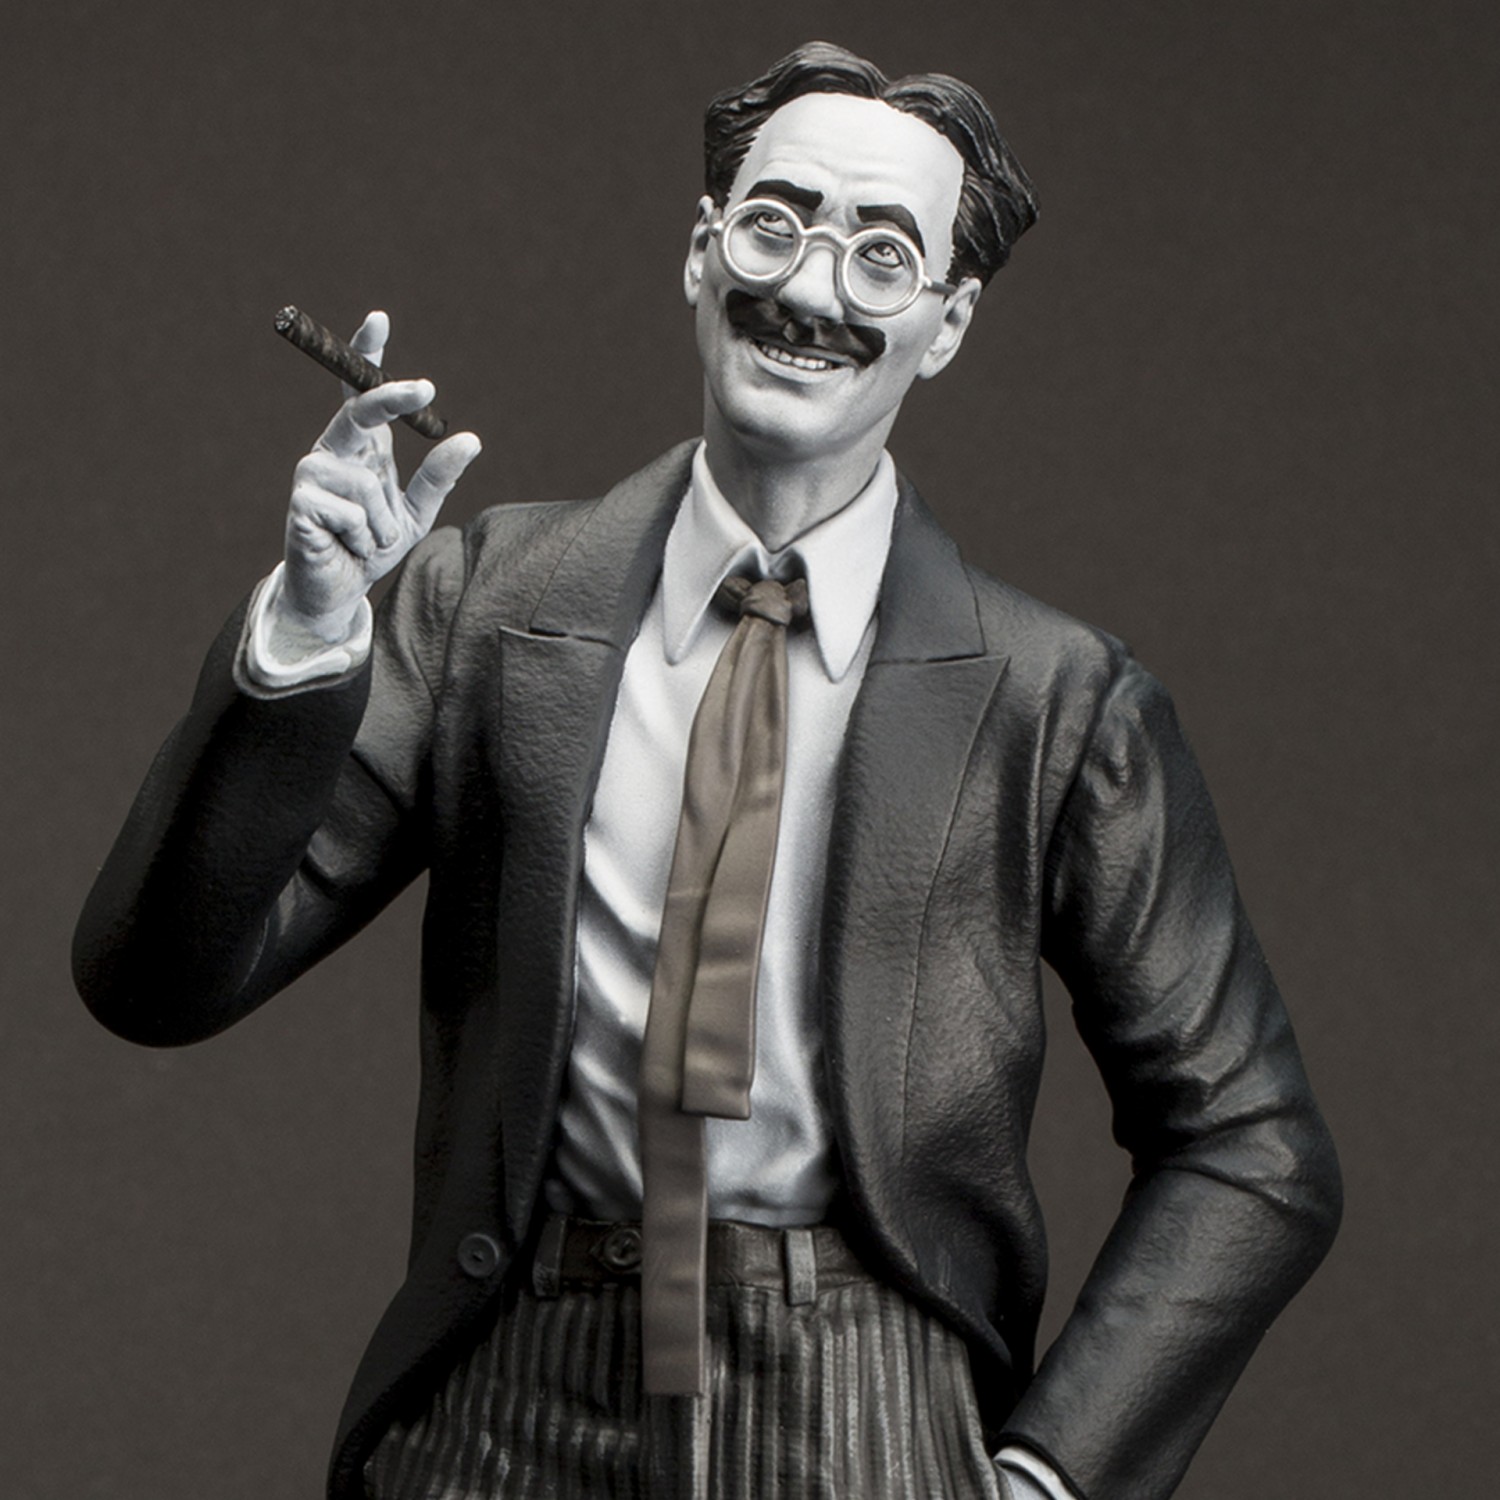 Statua di Groucho Marx un gigante della risata - 13